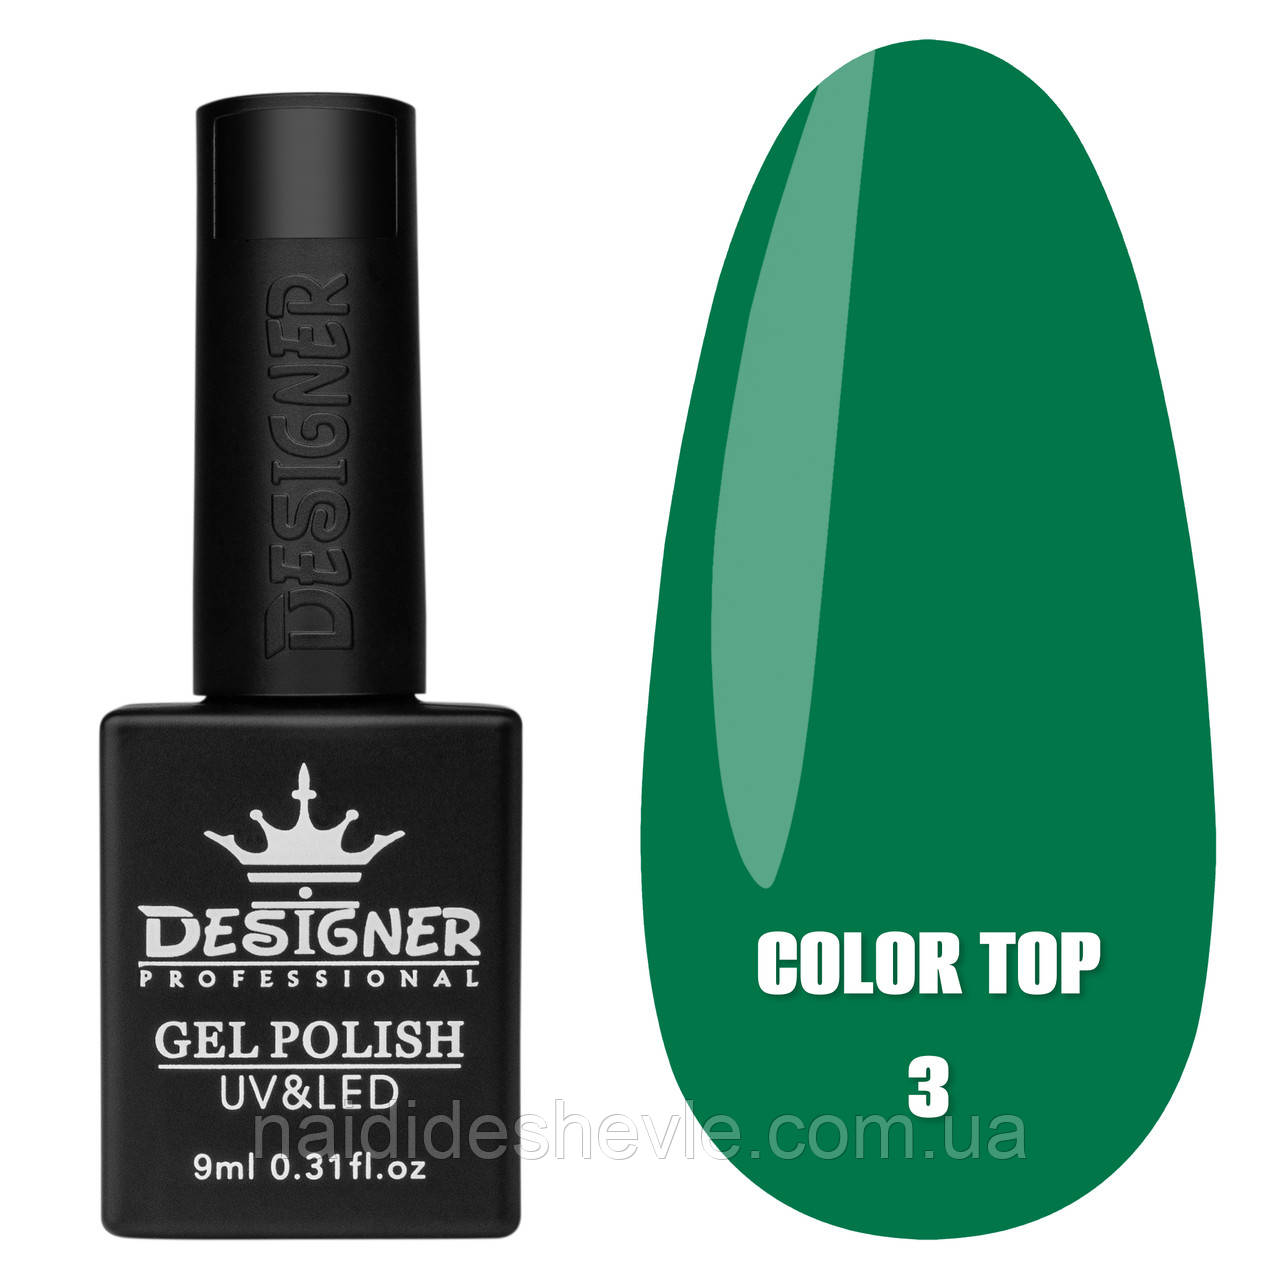 Color Top Дизайнер (9 мл.) - кольорове топове покриття для нігтів з вітражним ефектом Зелений 03